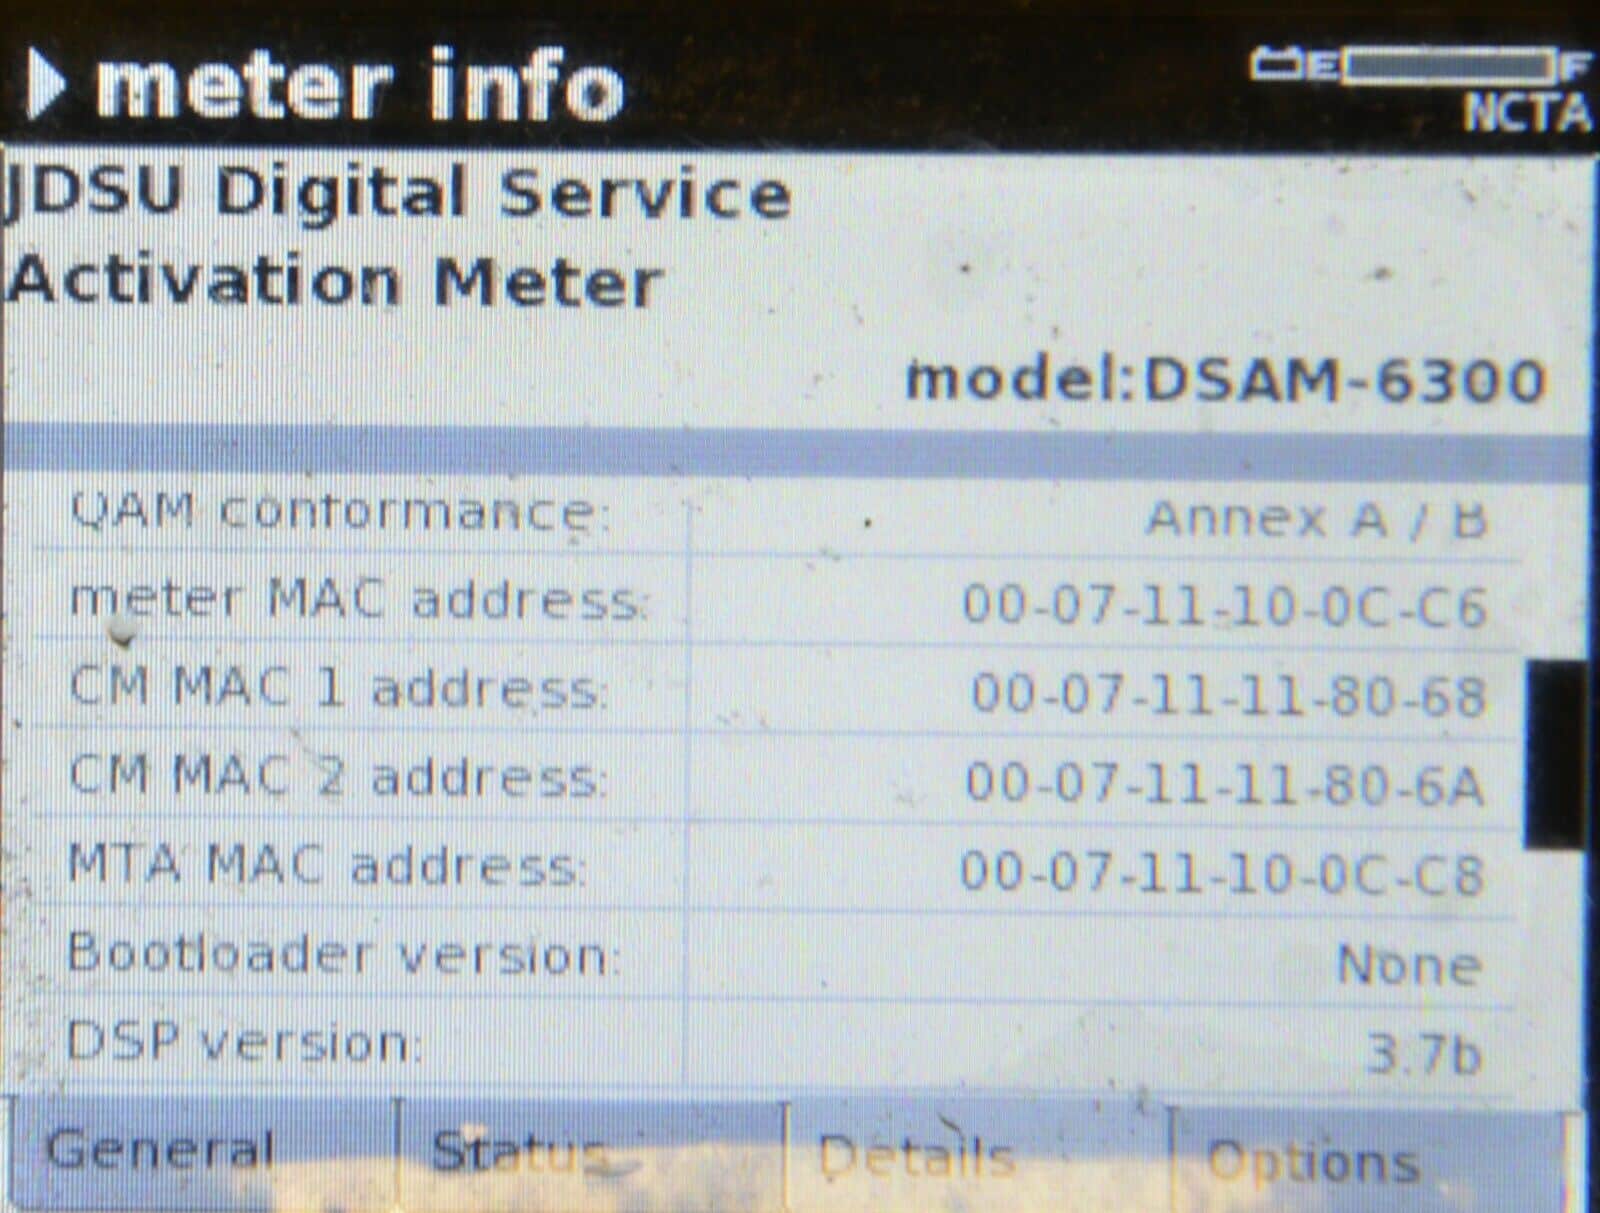 Demo Viavi JDSU DSAM 6300 XT Rev Fwd Sweep Cable Meter Docsis 3.0 Annex A/B ONX